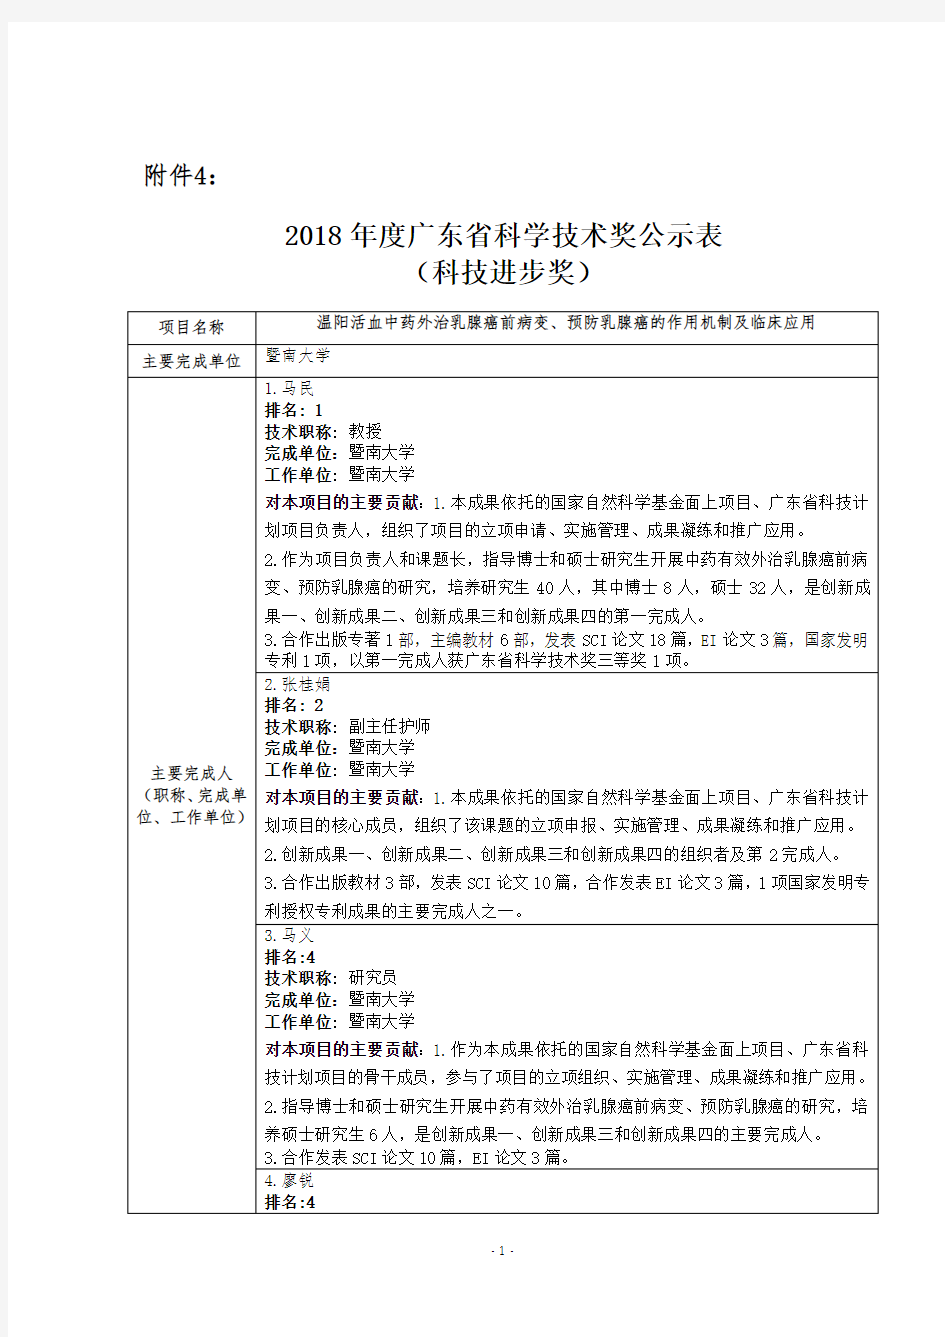 2018年度广东省科学技术奖公示表-暨南大学科技处